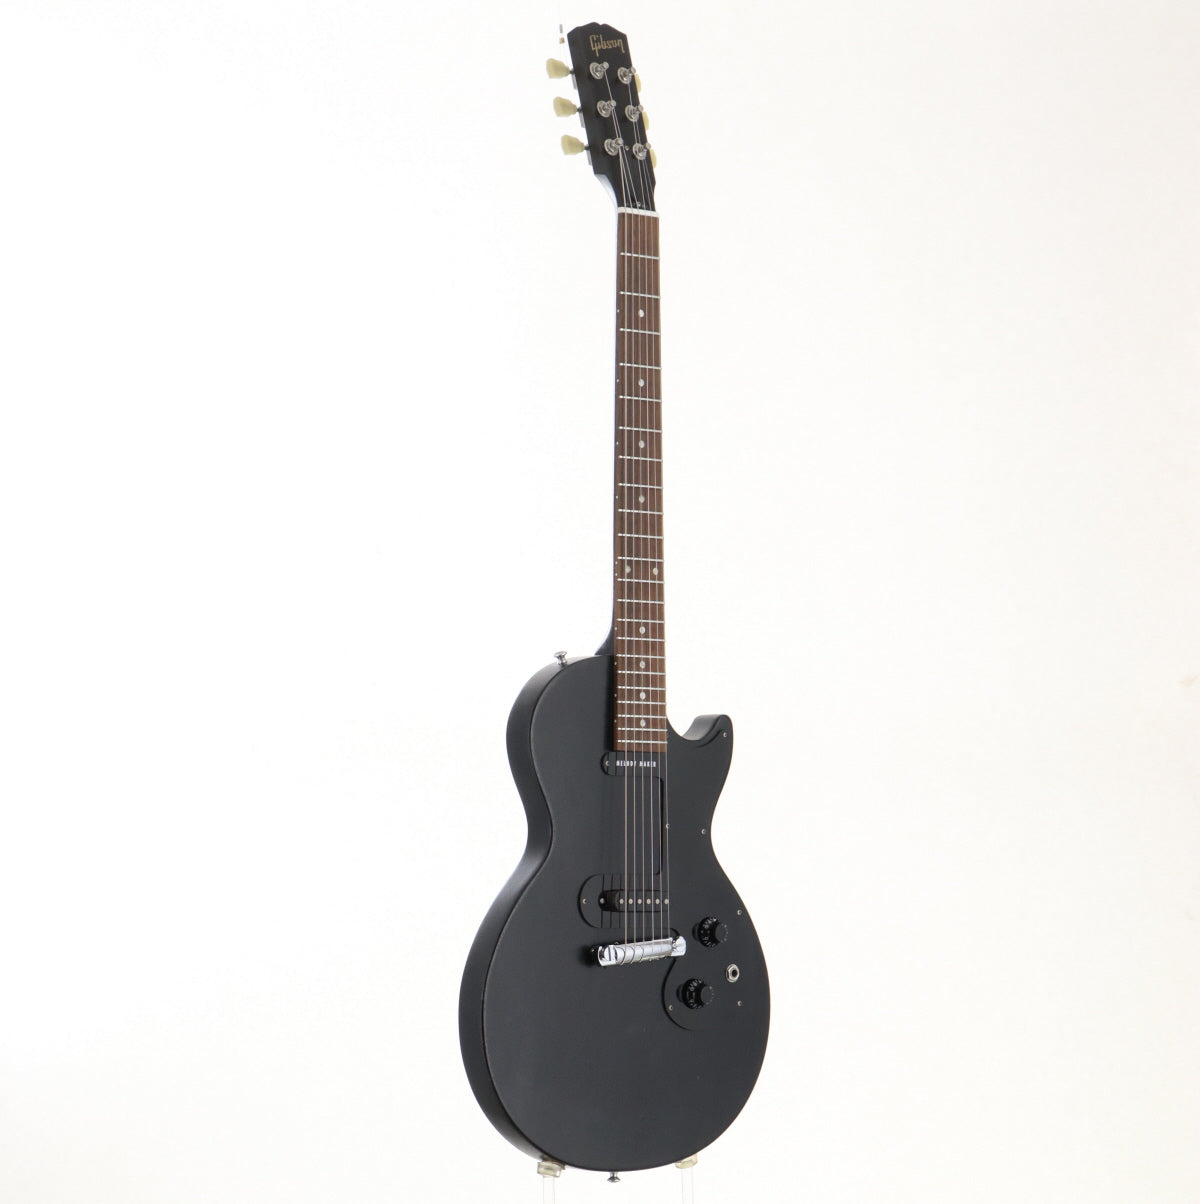 [SN 016971357] USED Gibson Usa / Melody Maker Satin Ebony [03]